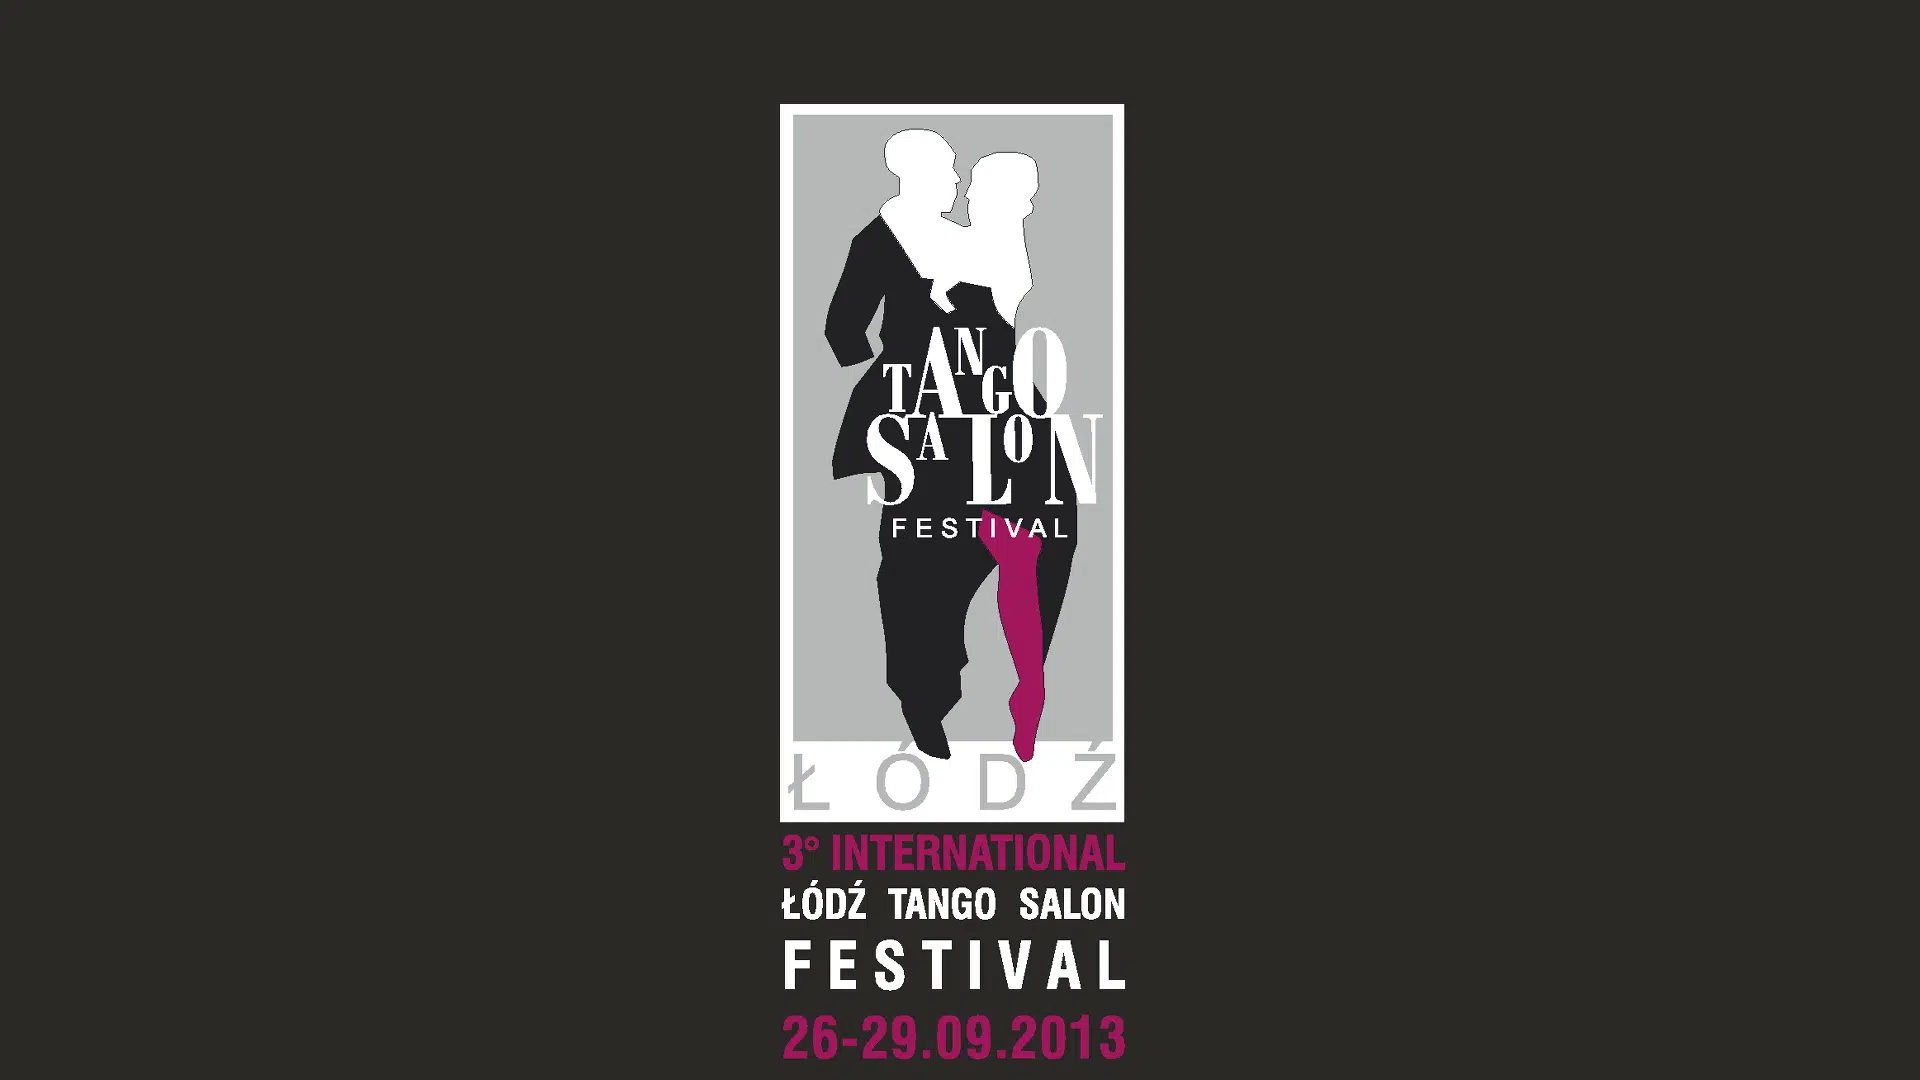 Lodz Tango Salon Festival 2013 preview picture